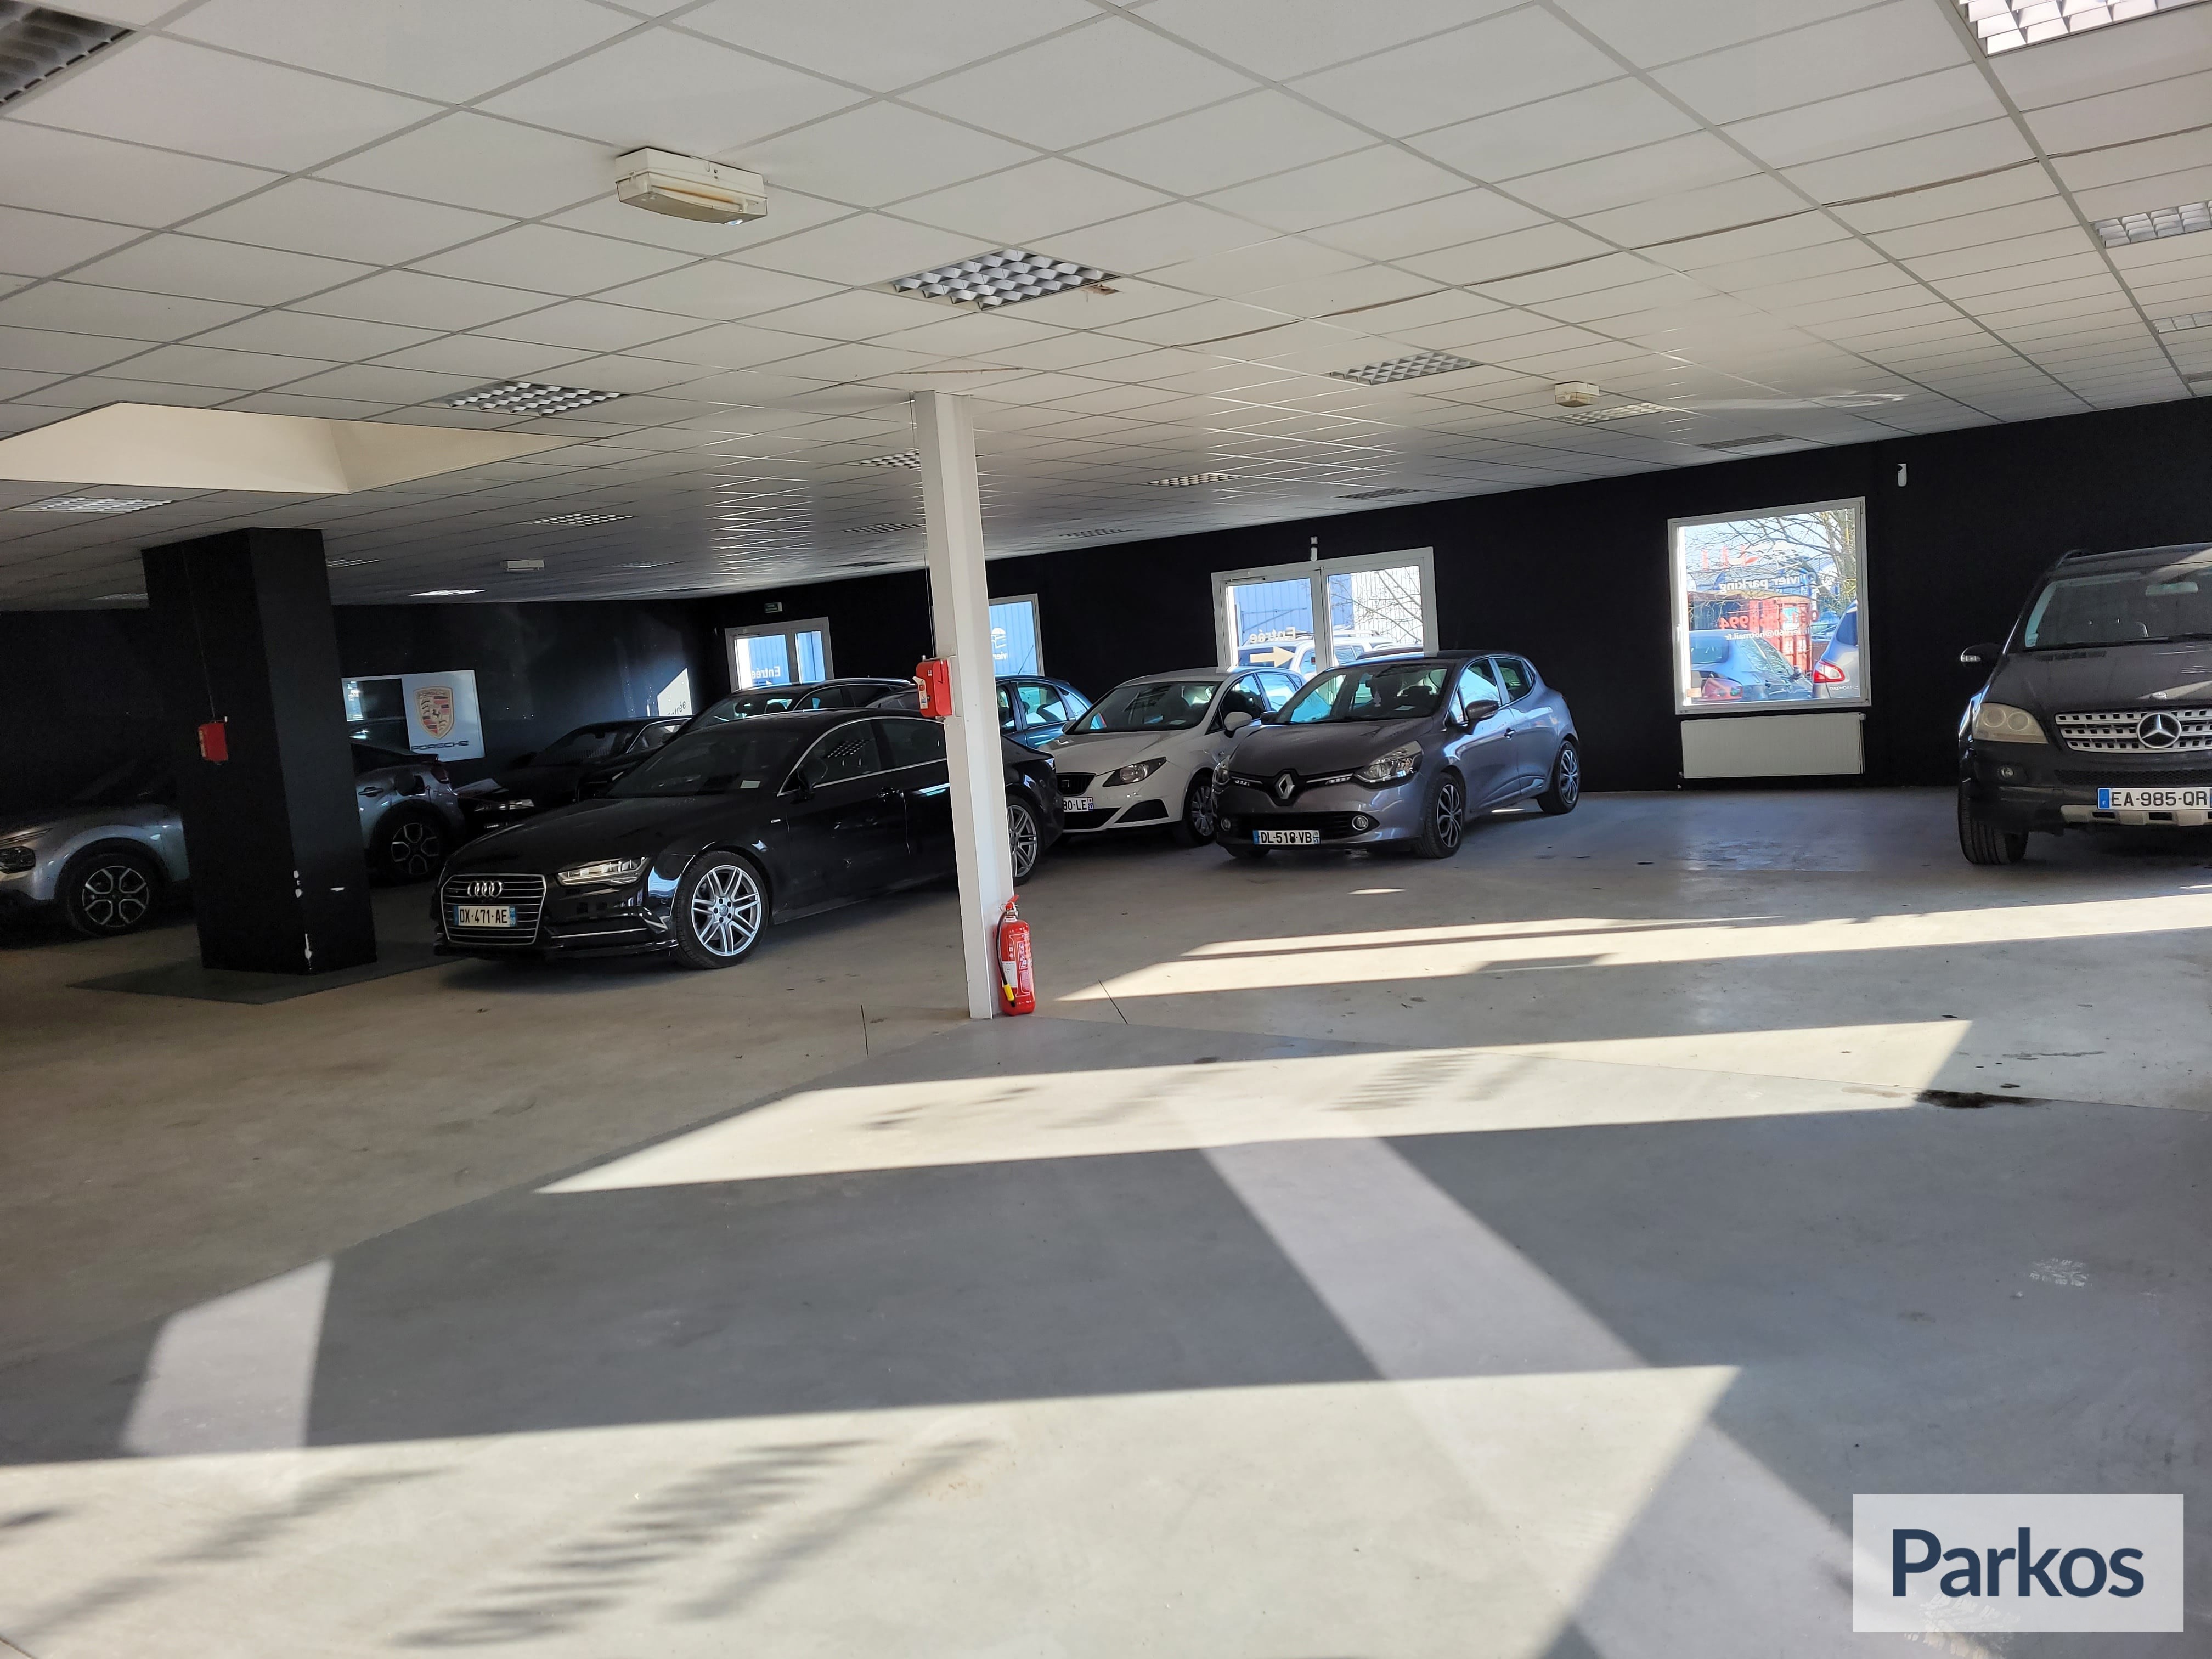 Olivier Parking - Parking Aéroport Beauvais - picture 1